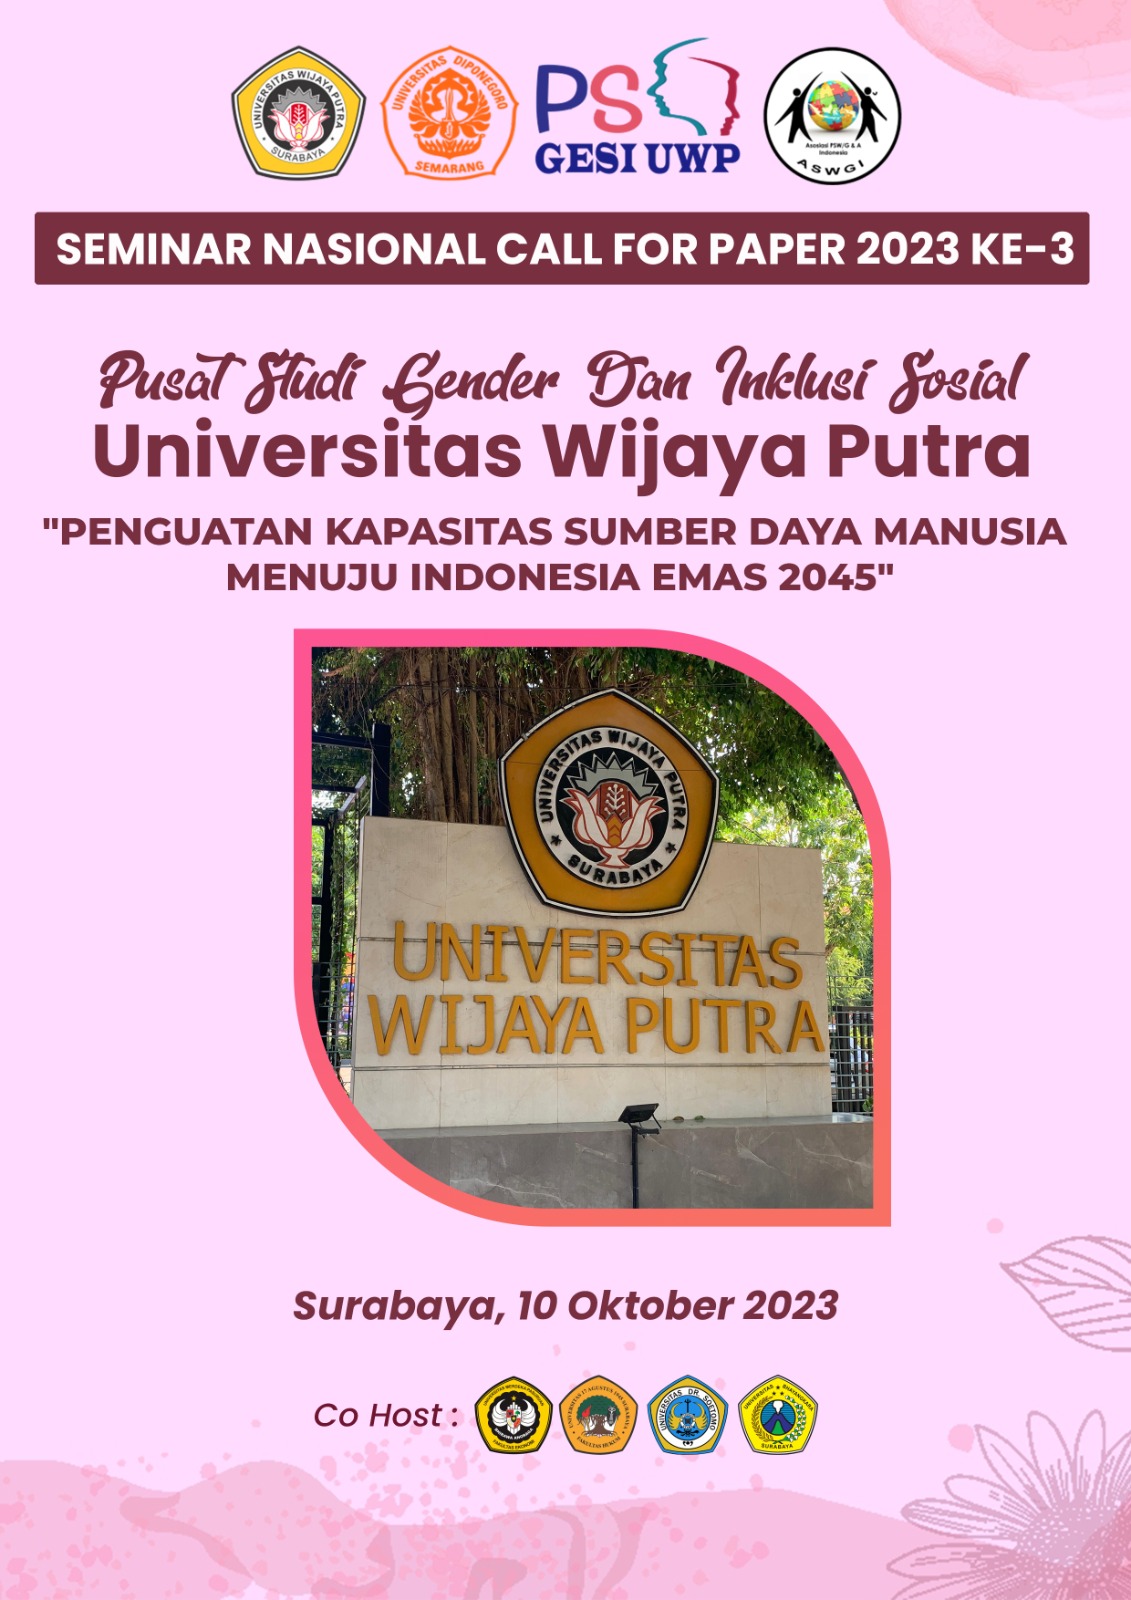 					Lihat Vol 10 No 1 (2023): Prosiding Seminar Nasional & Call for Paper "Penguatan Kapasitas Sumber daya Manusia Menuju Indonesia Emas 2045" PSGESI UWP, September 2023
				